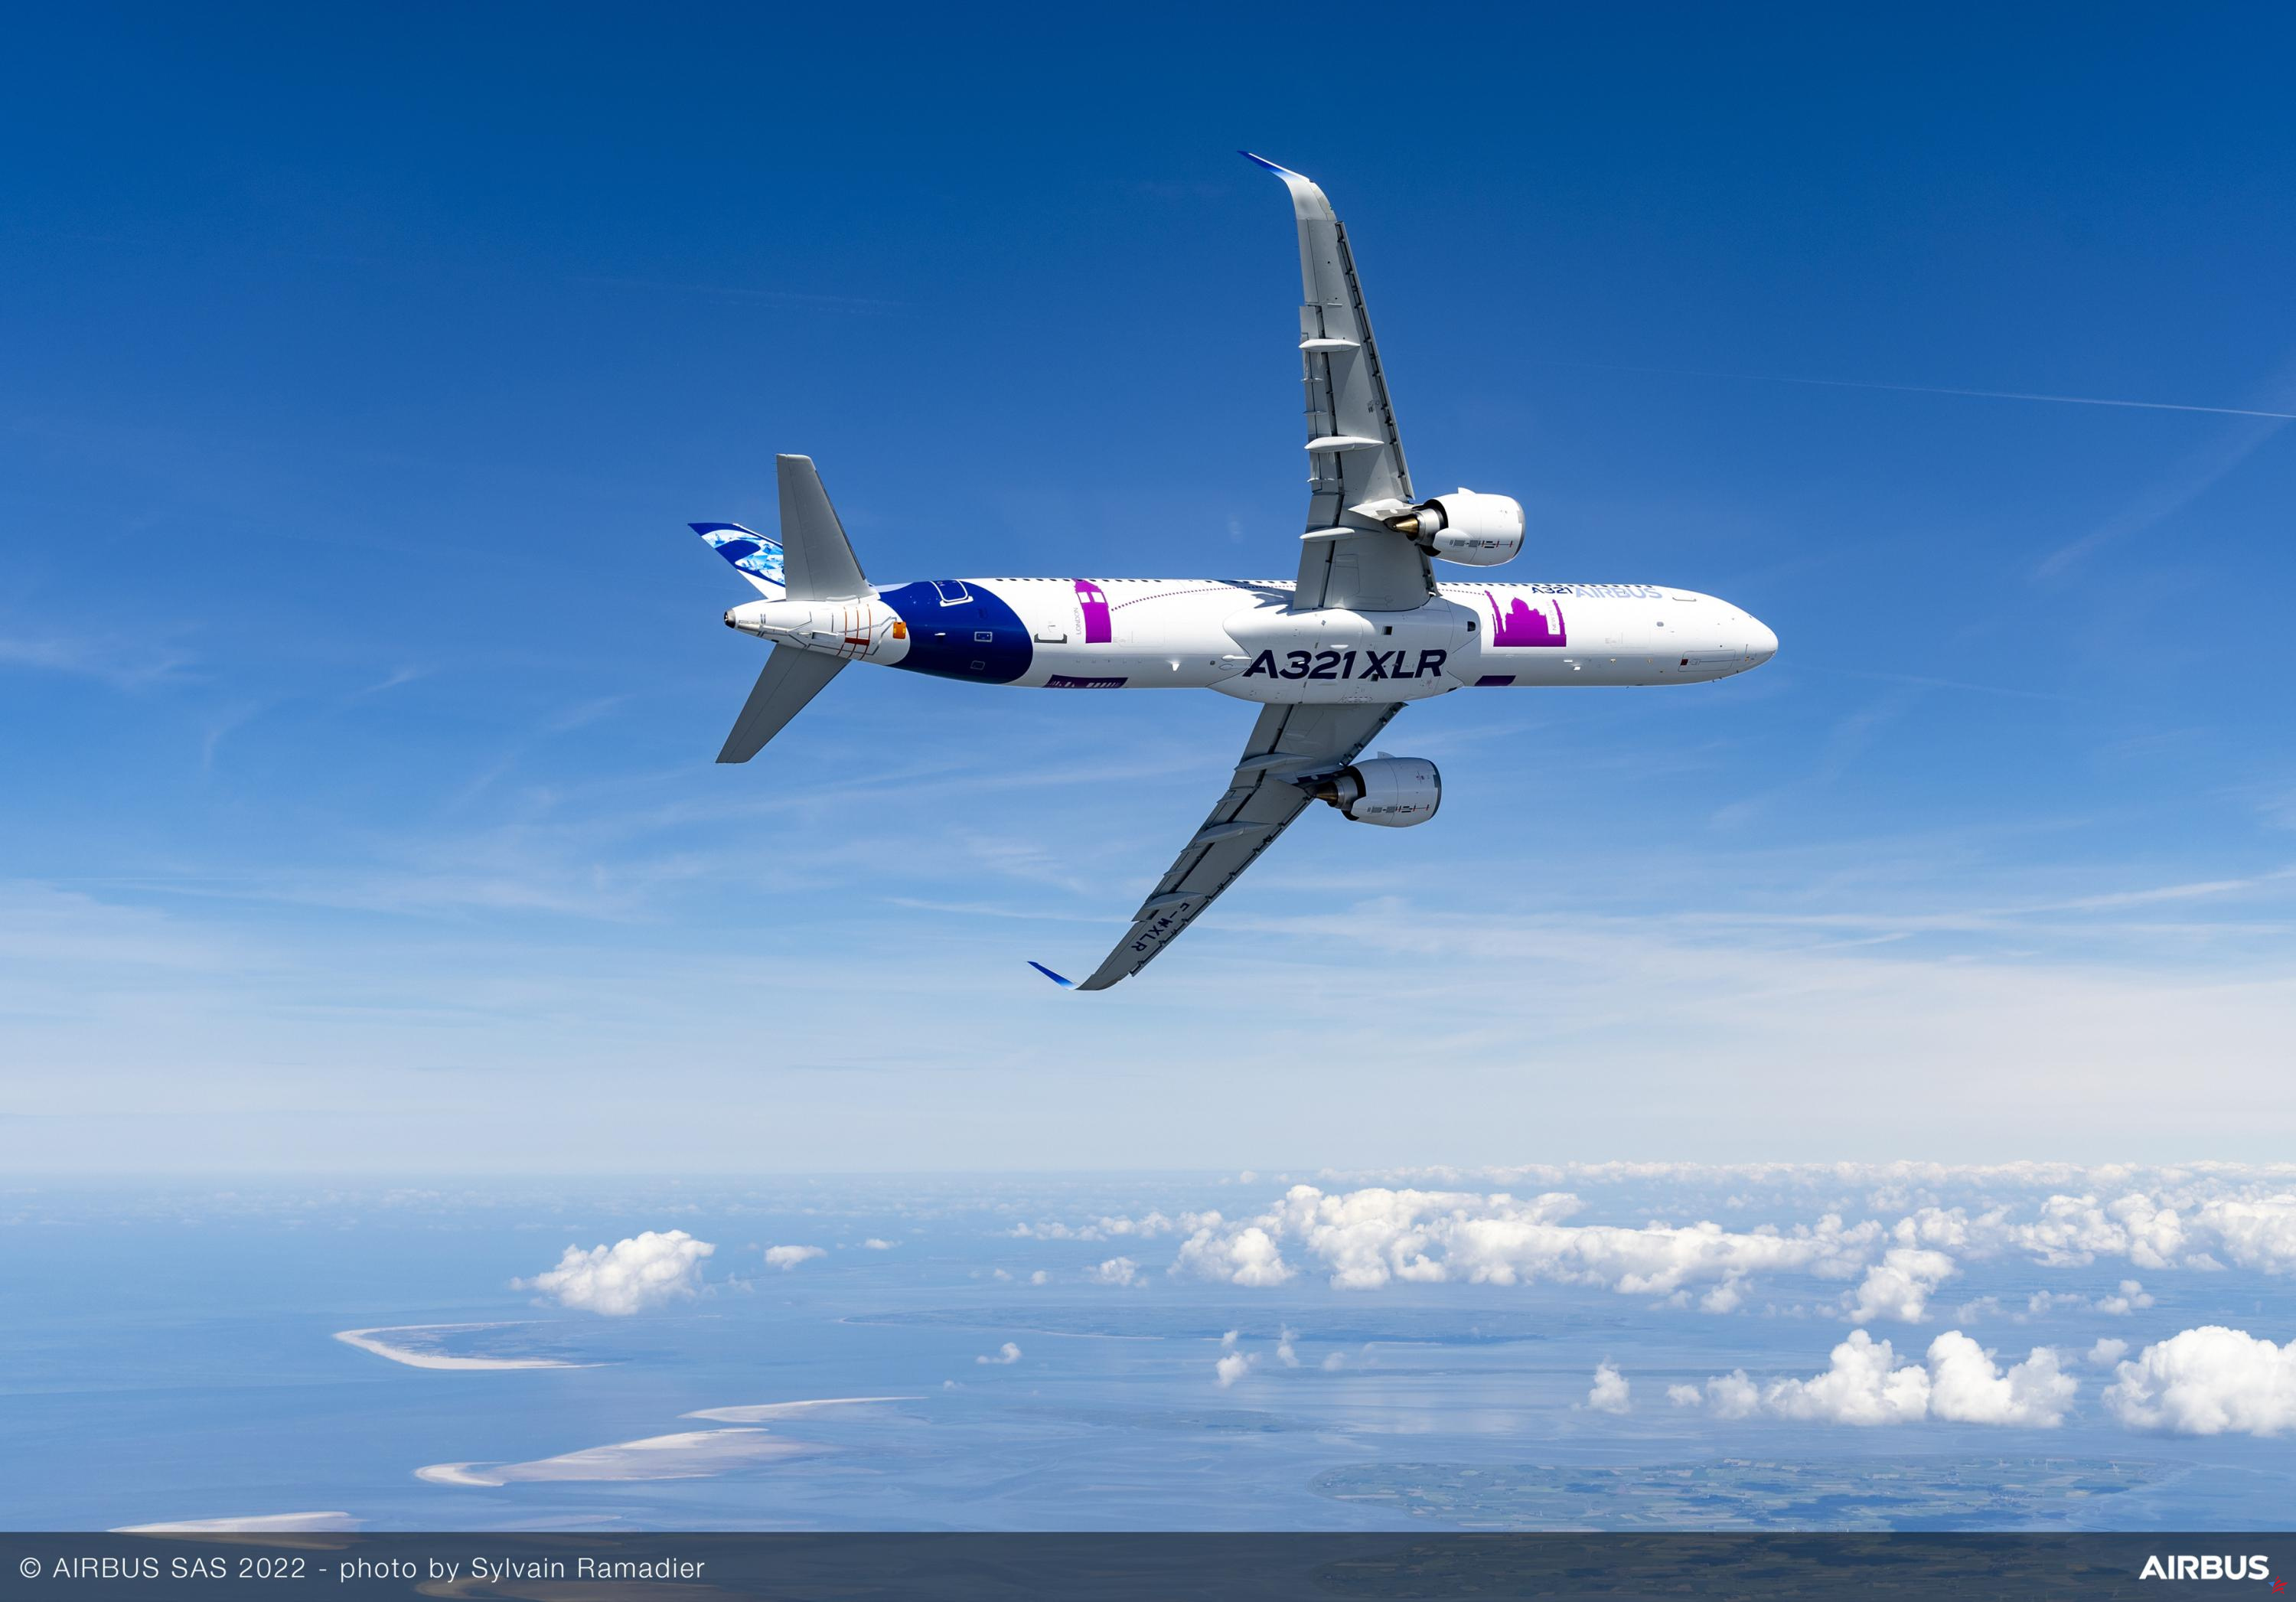 Con buenos resultados, Airbus refuerza su dominio sobre Boeing